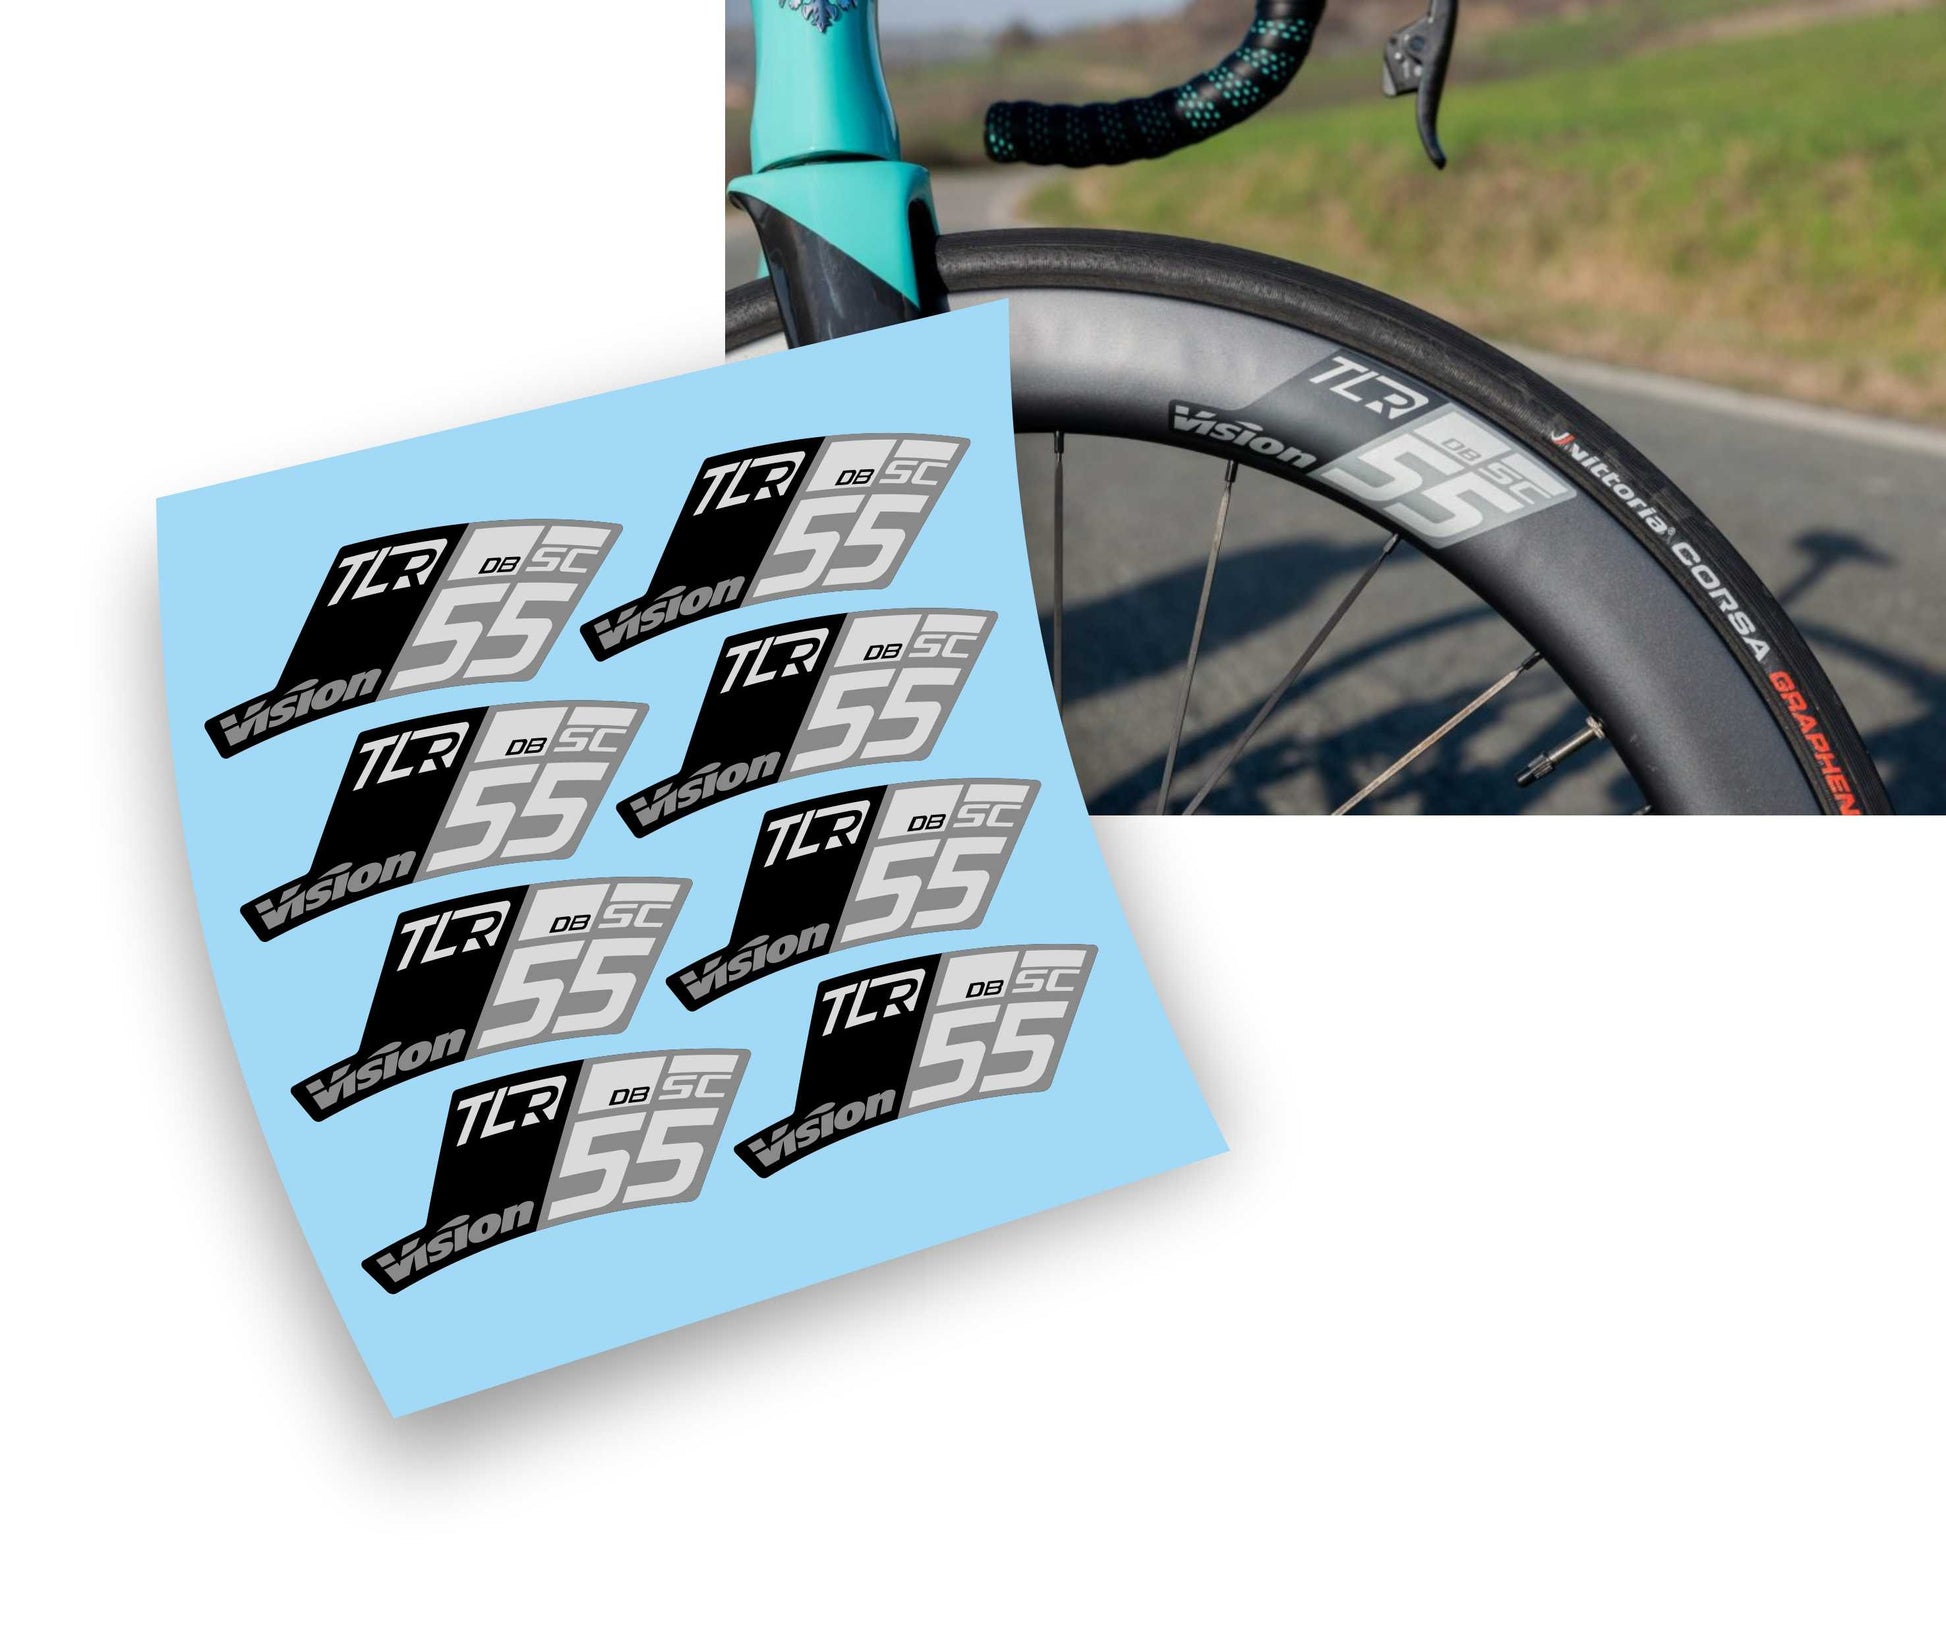 Vision SC 55 TLR Disc Kit adesivi per cerchi bicicletta da corsa – L'adesivo .com